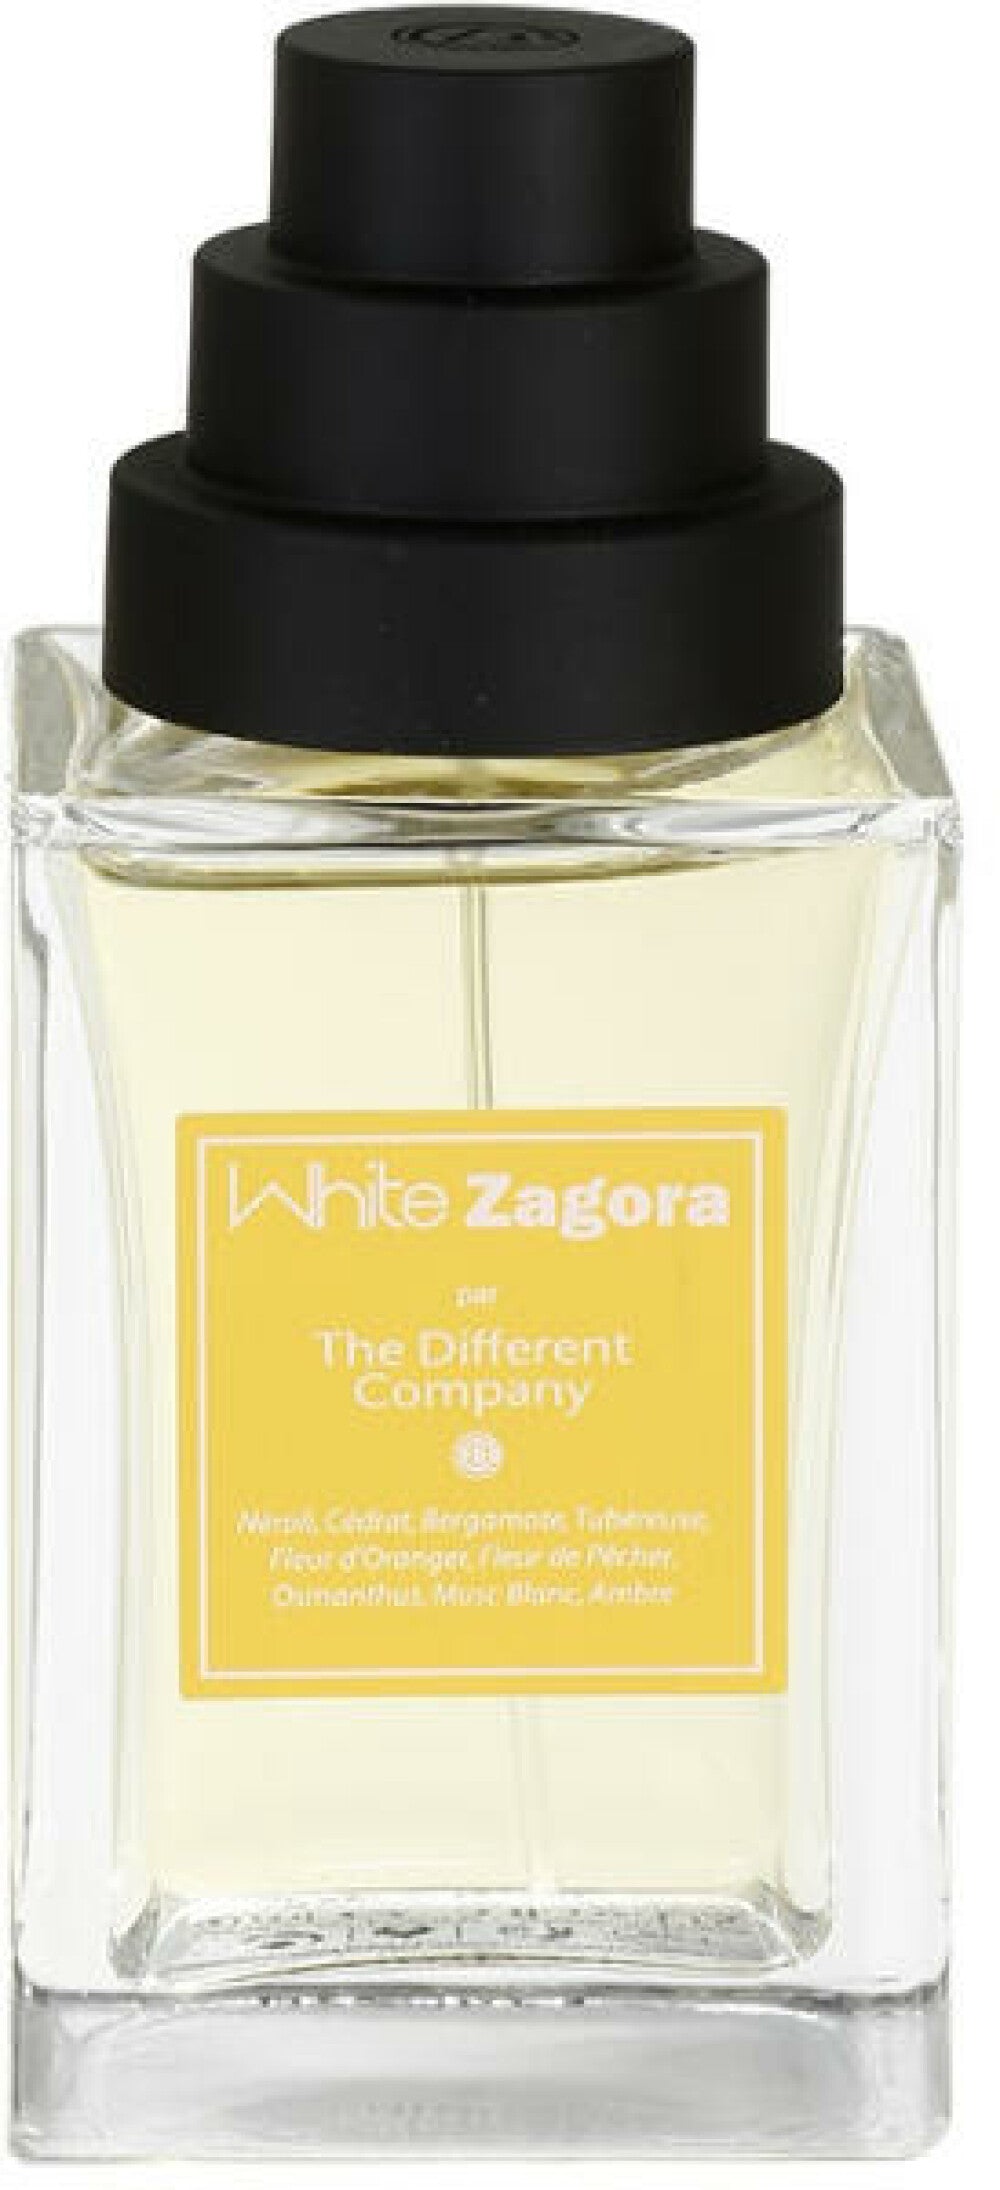 The Different Company, White Zagora, Eau De Cologne, Pour Femme, 100 ml